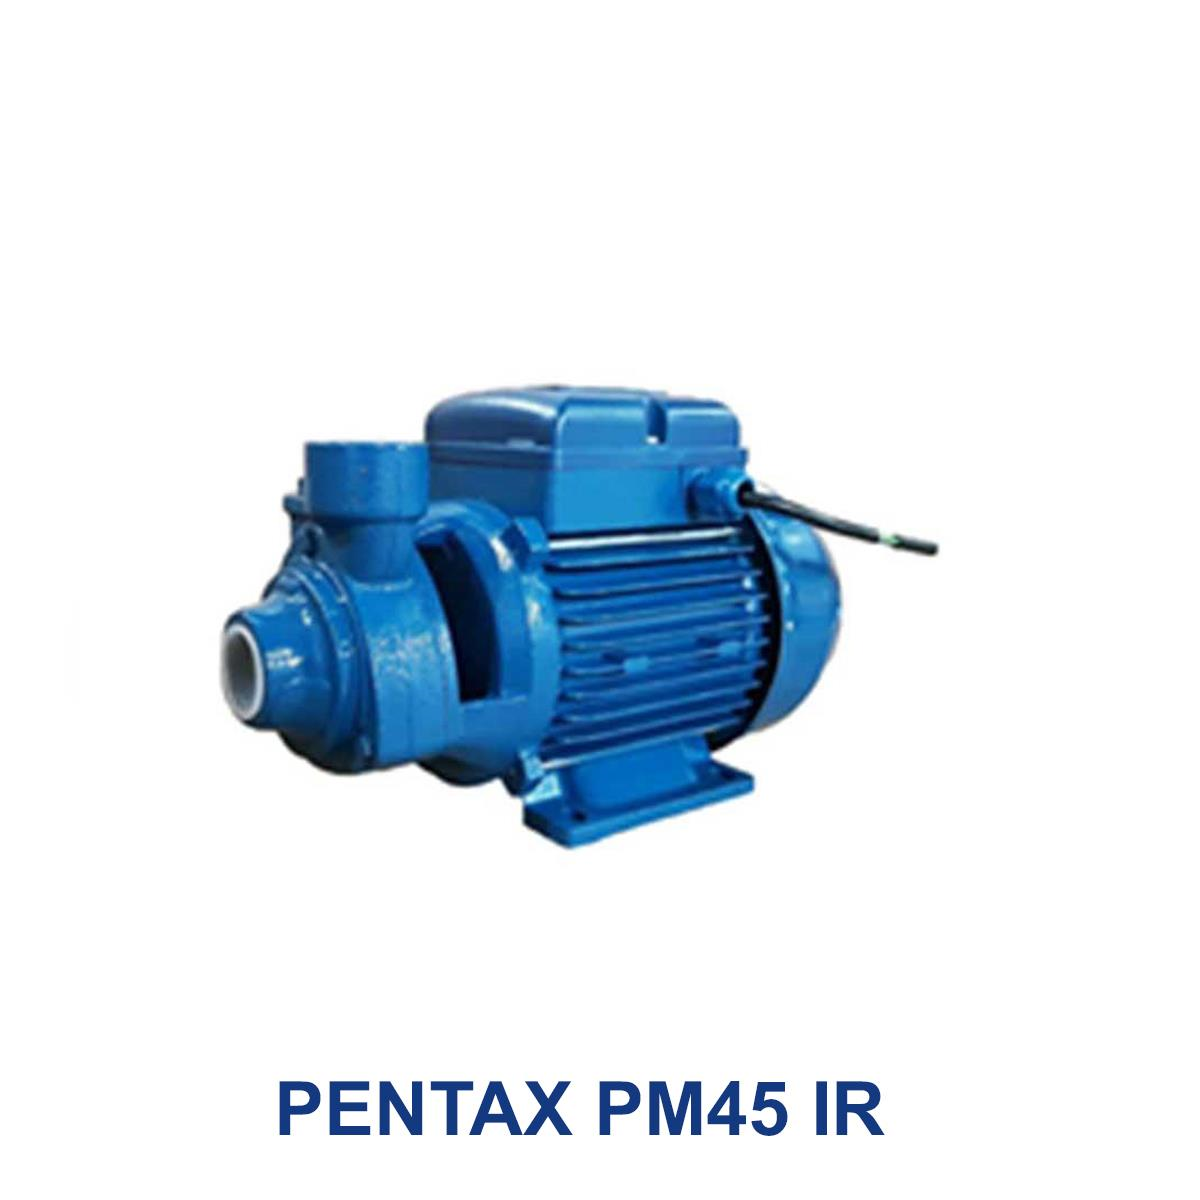 PENTAX-PM45-IR